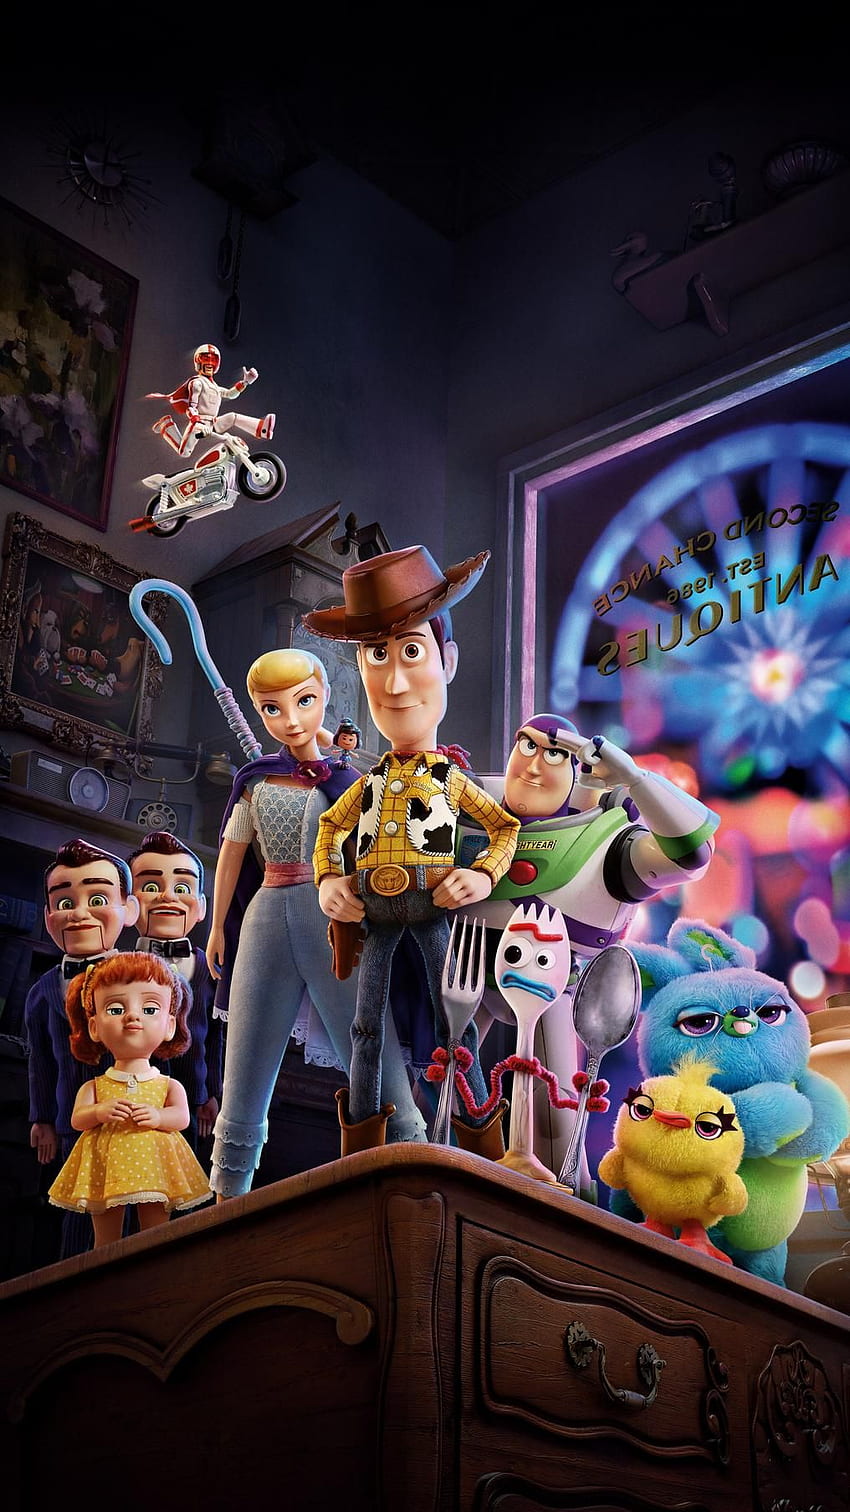 Toy Story 4 (2019) Teléfono. Cinemanía. Dibujos animados, Disney, Lindo disney, Toy Story 4 iPhone fondo de pantalla del teléfono